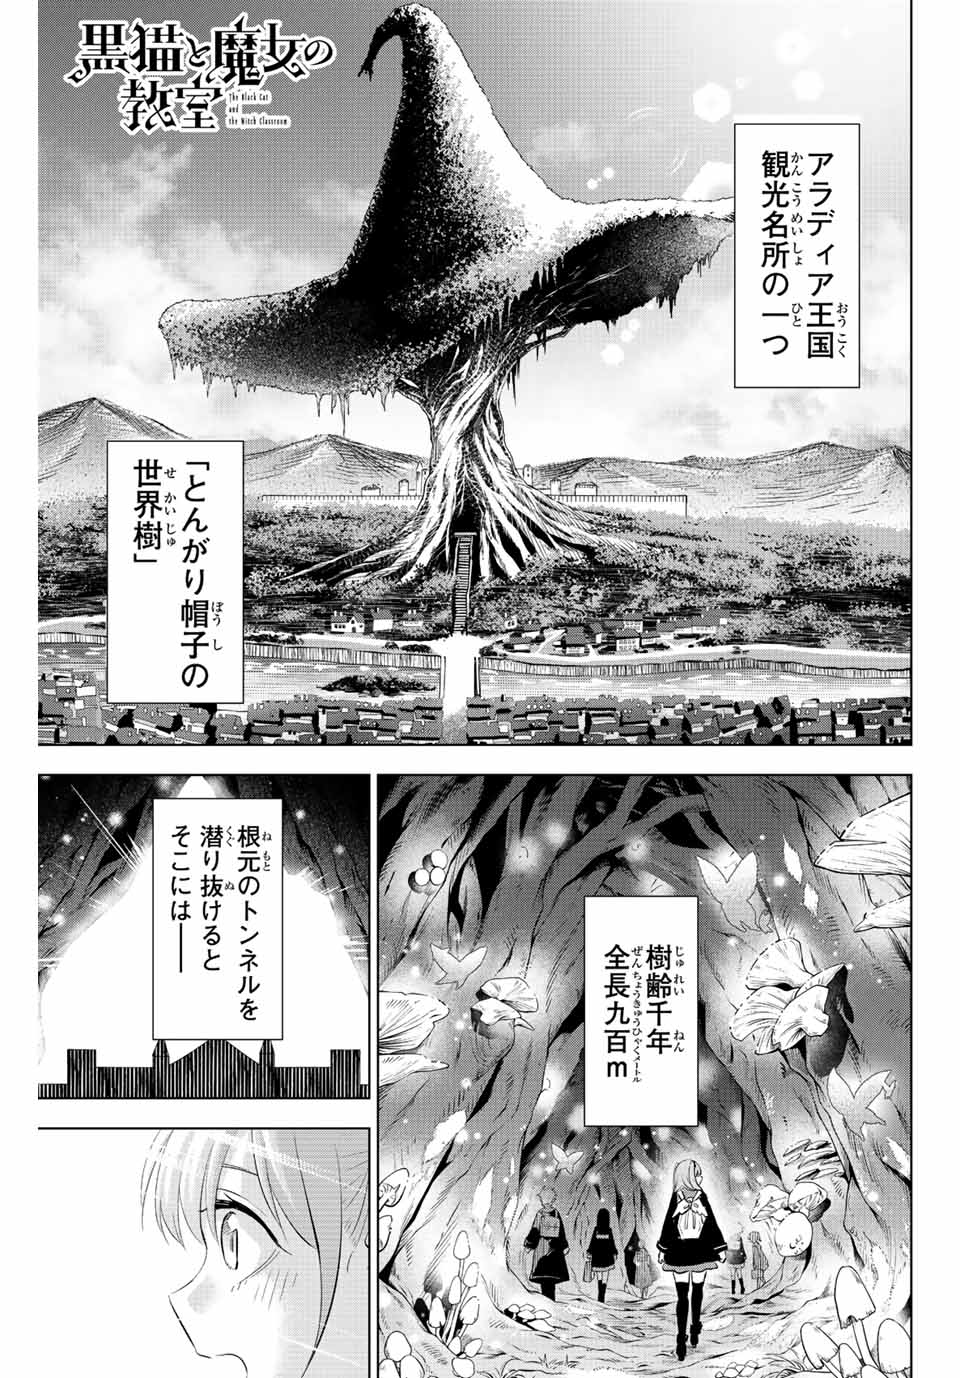 Kuroneko to Majo no Kyoushitsu - Chapter 4.1 - Page 1